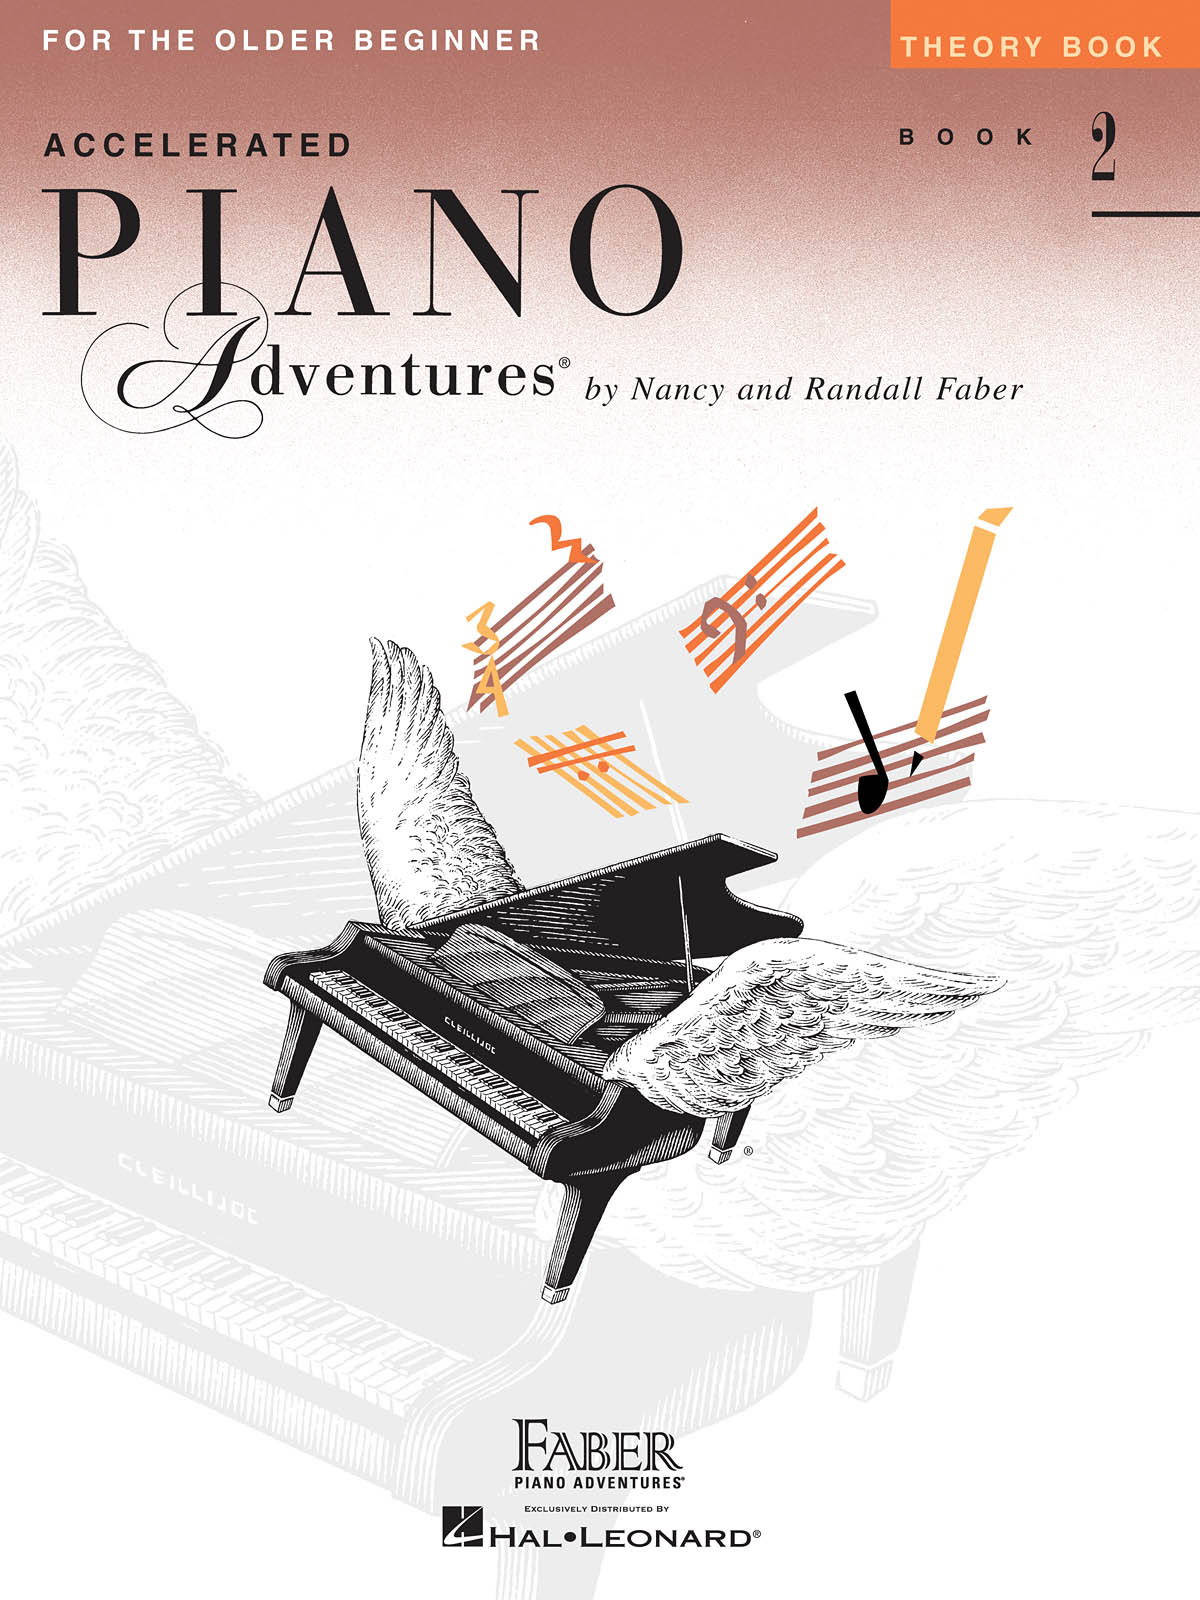 Accelerated Piano Adventures: Popular Repertoire Book 2